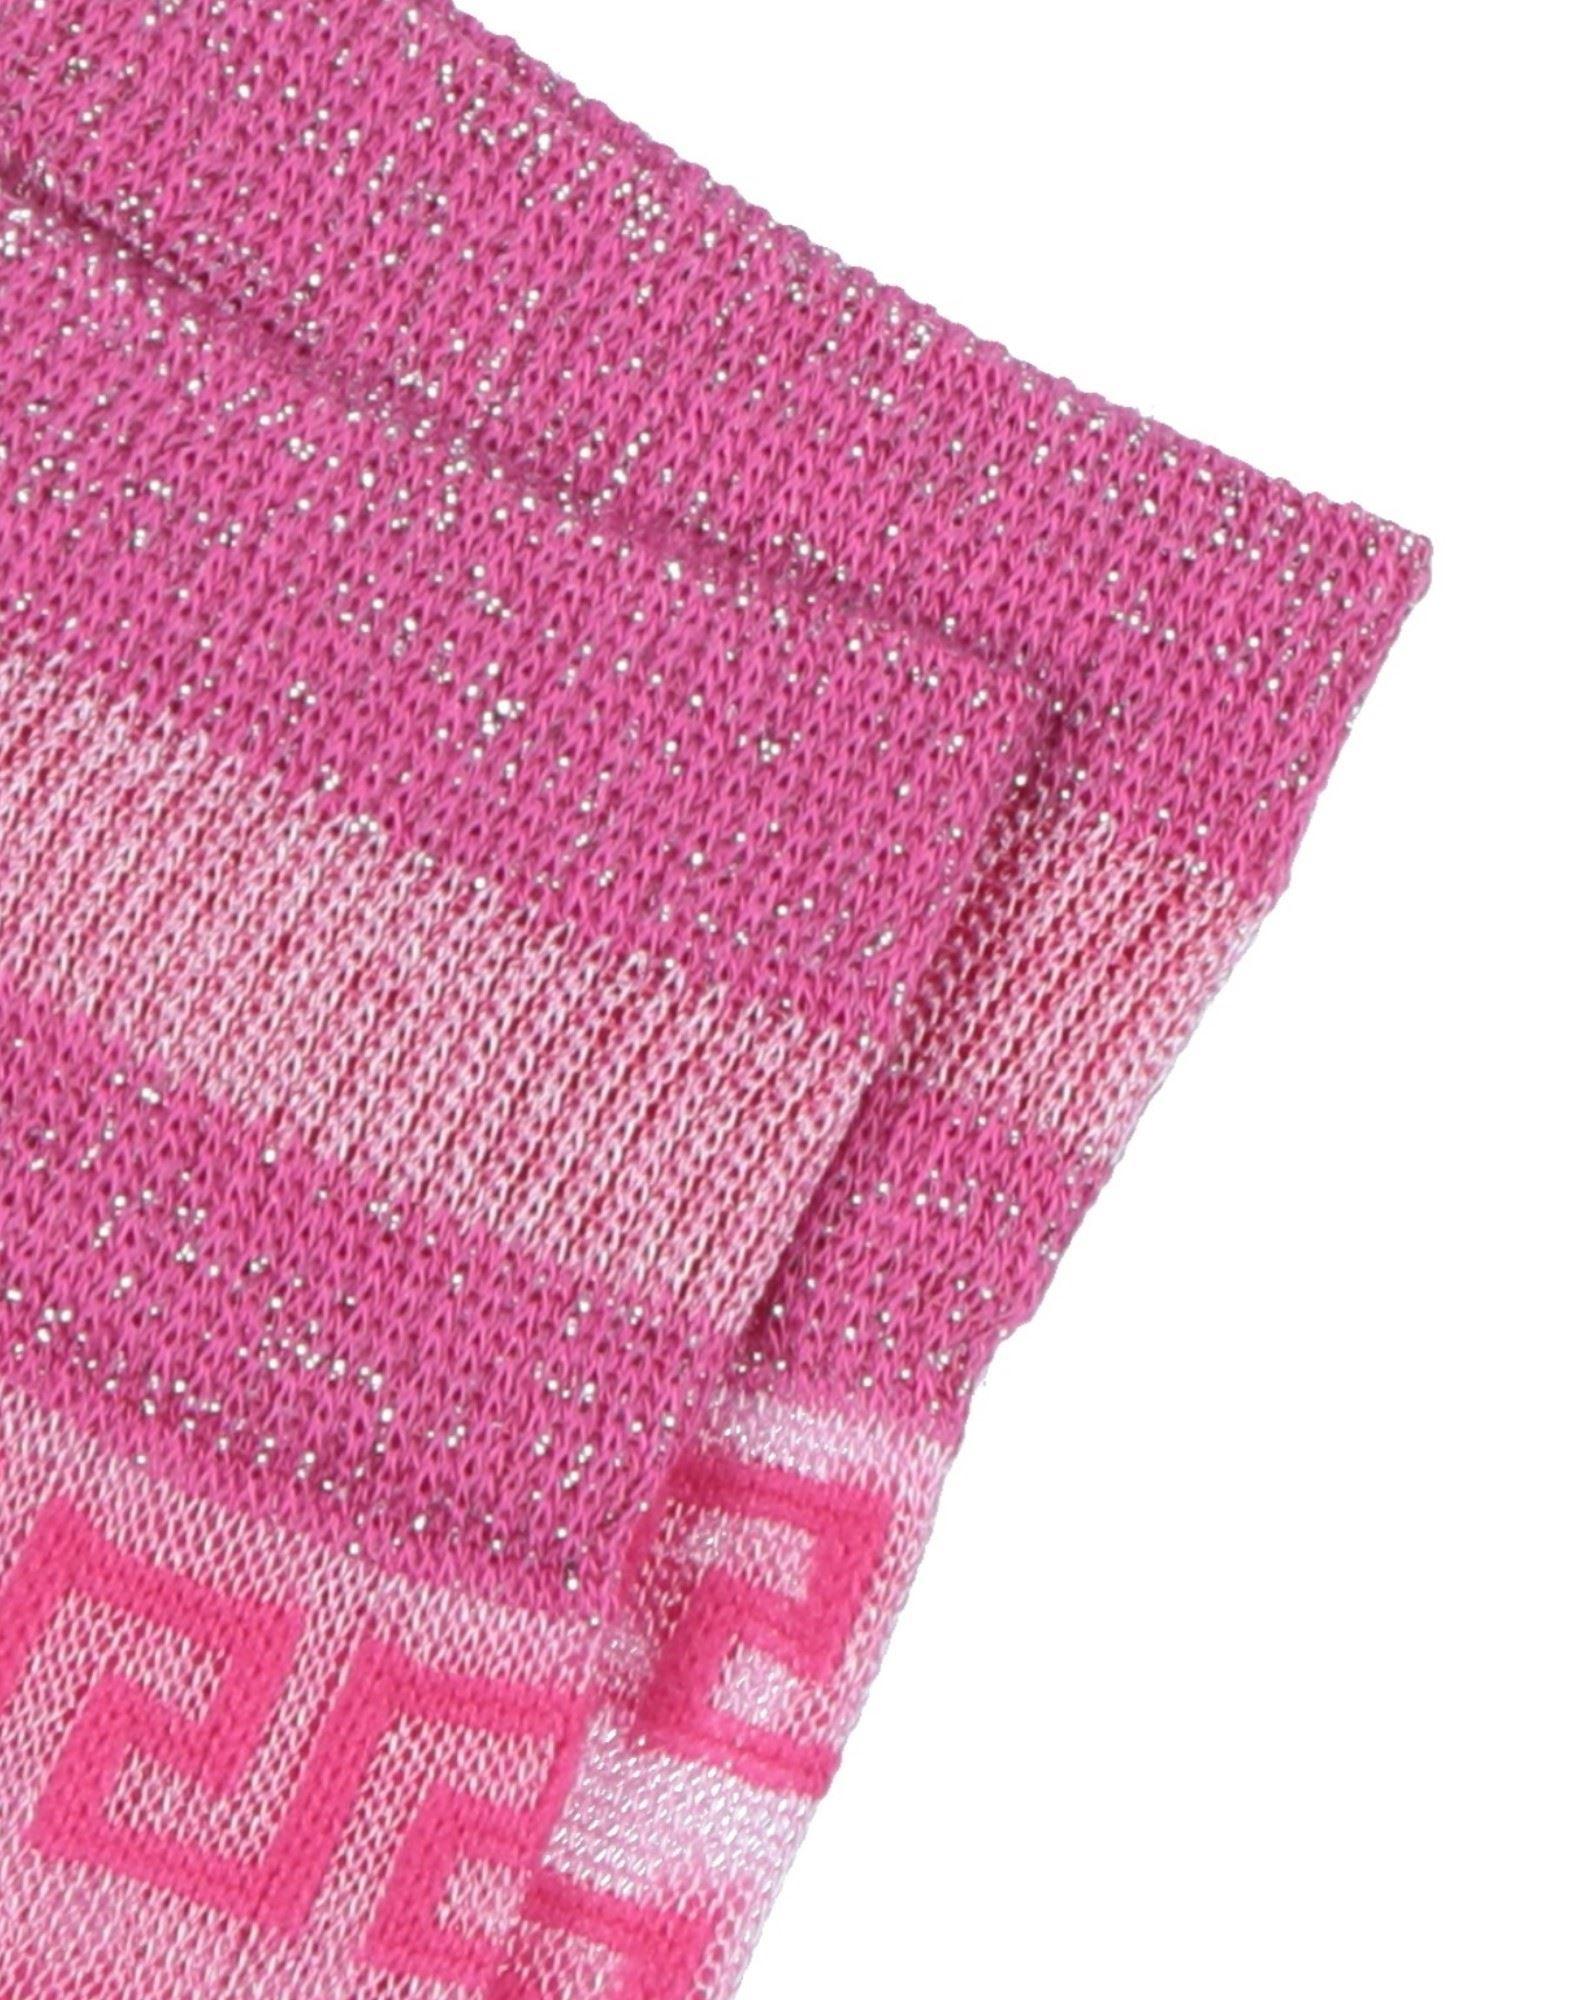 Women's Pink Socks & Hosiery